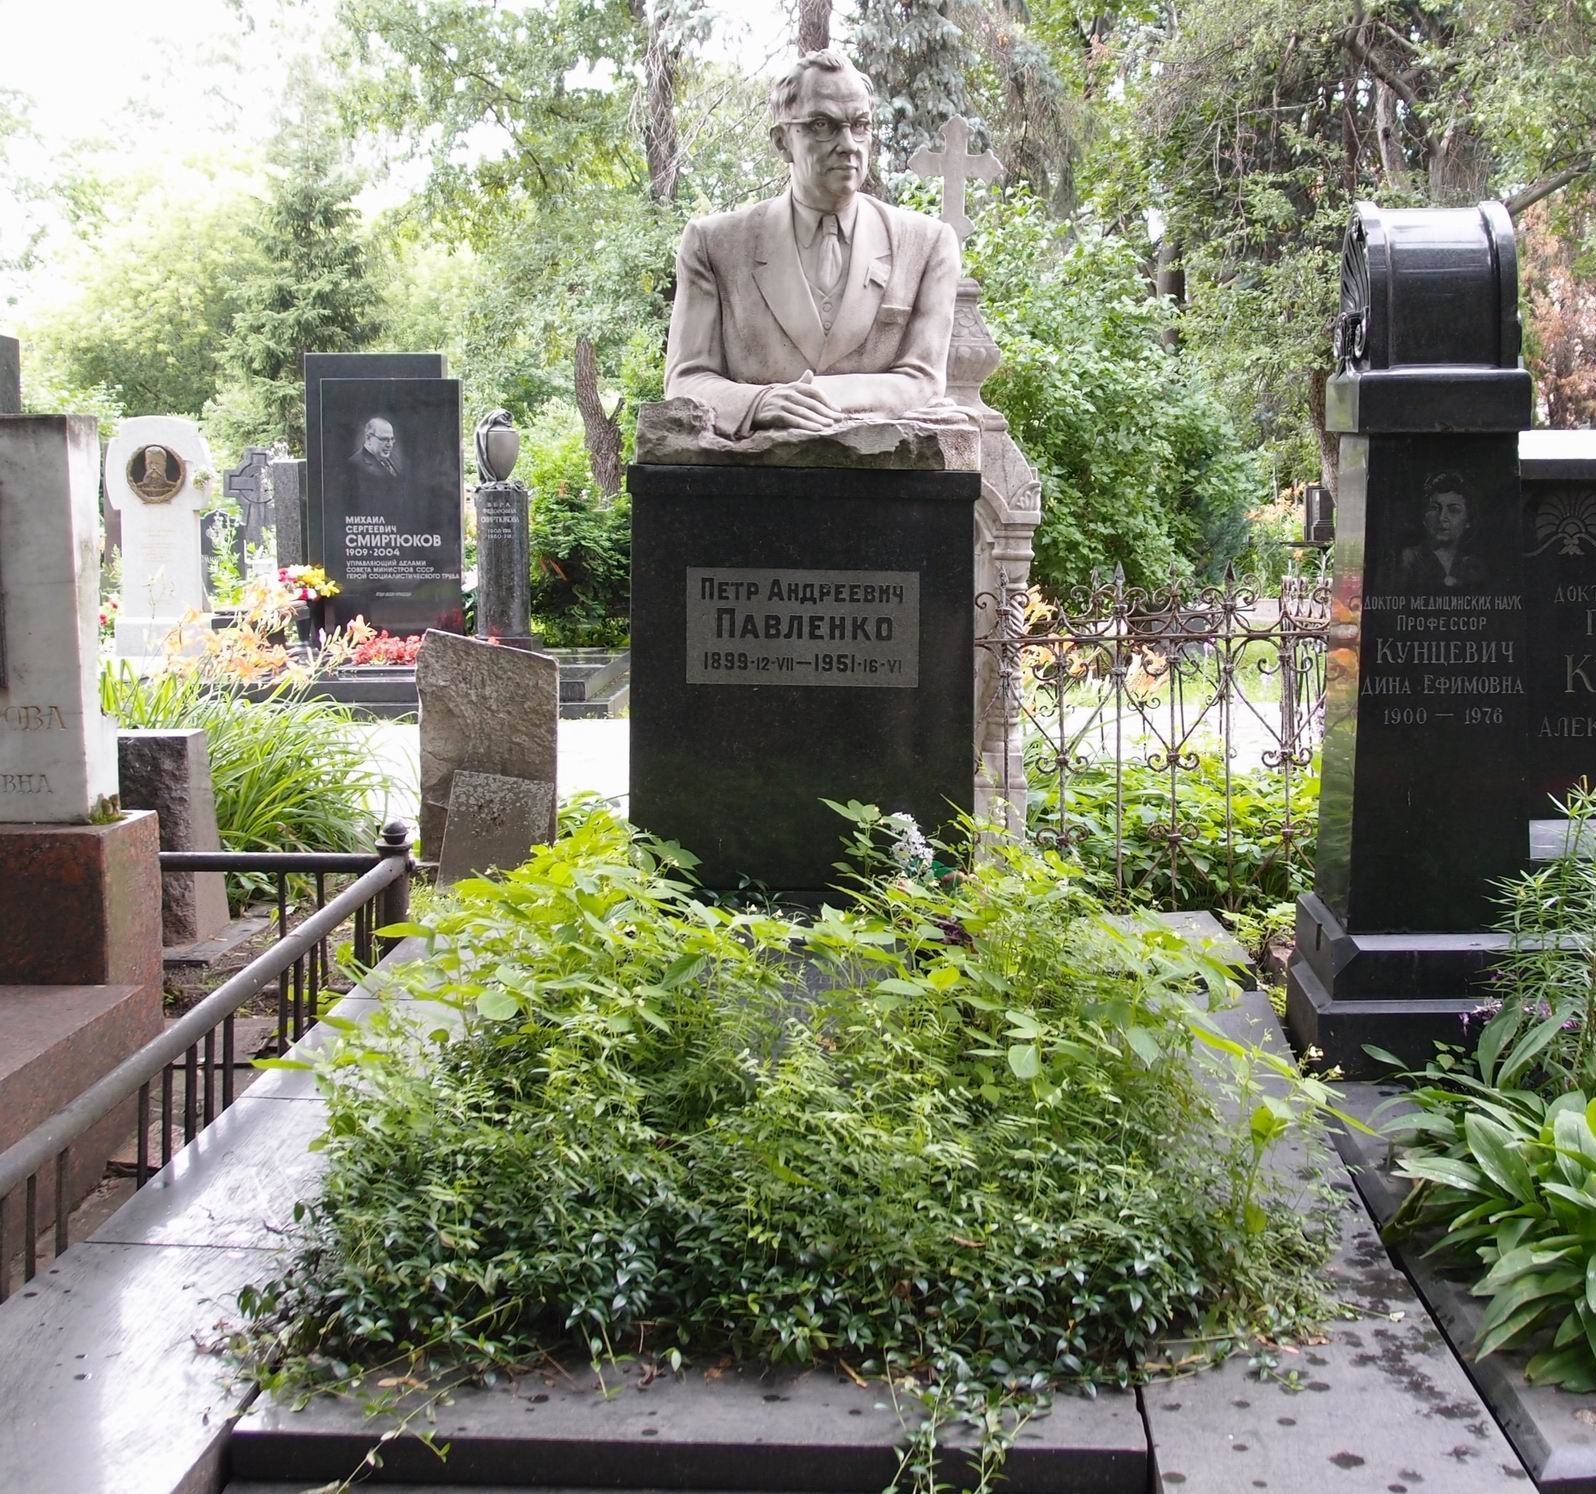 Памятник на могиле Павленко П.А. (1899-1951), ск. С.Конёнков, арх. А.Заварзин, на Новодевичьем кладбище (1-2-17). Нажмите левую кнопку мыши, чтобы увидеть фрагмент памятника крупно.